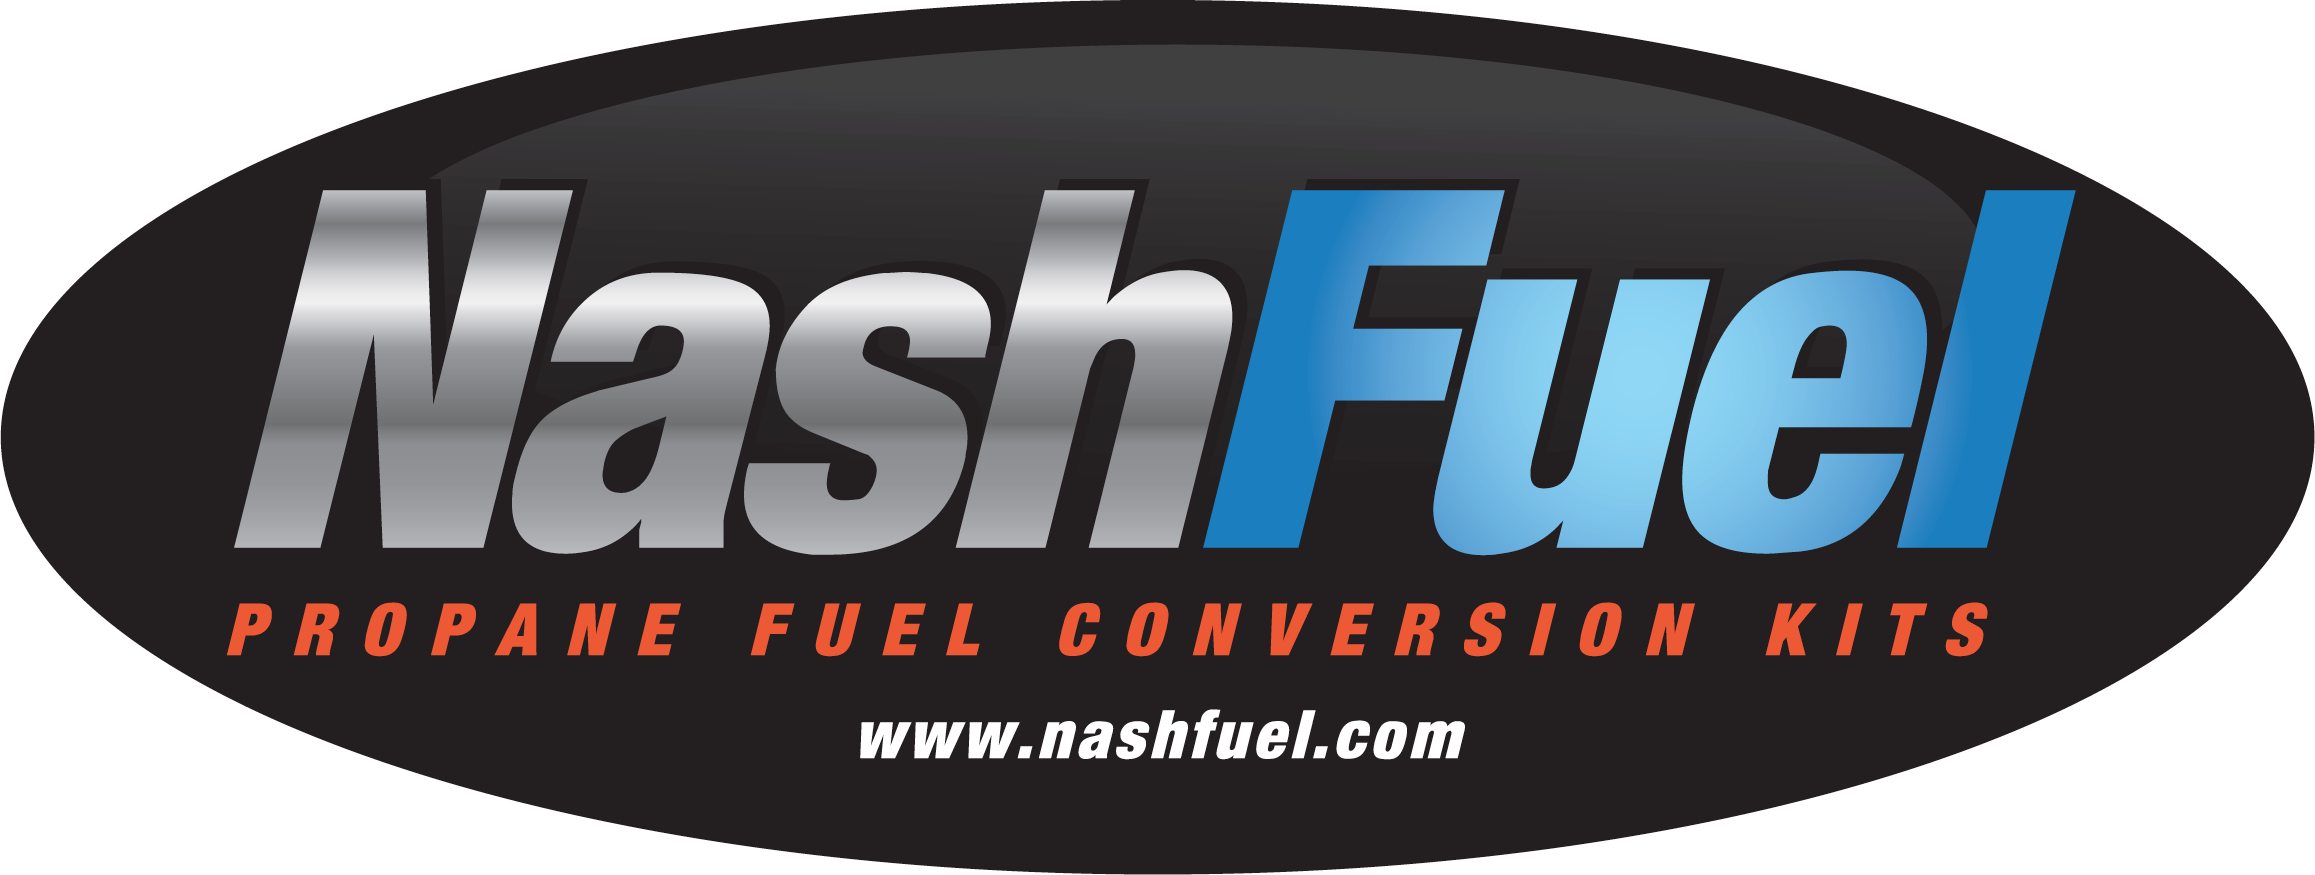 Nash Fuel Propane and Natural Gas Conversion Kits and Parts